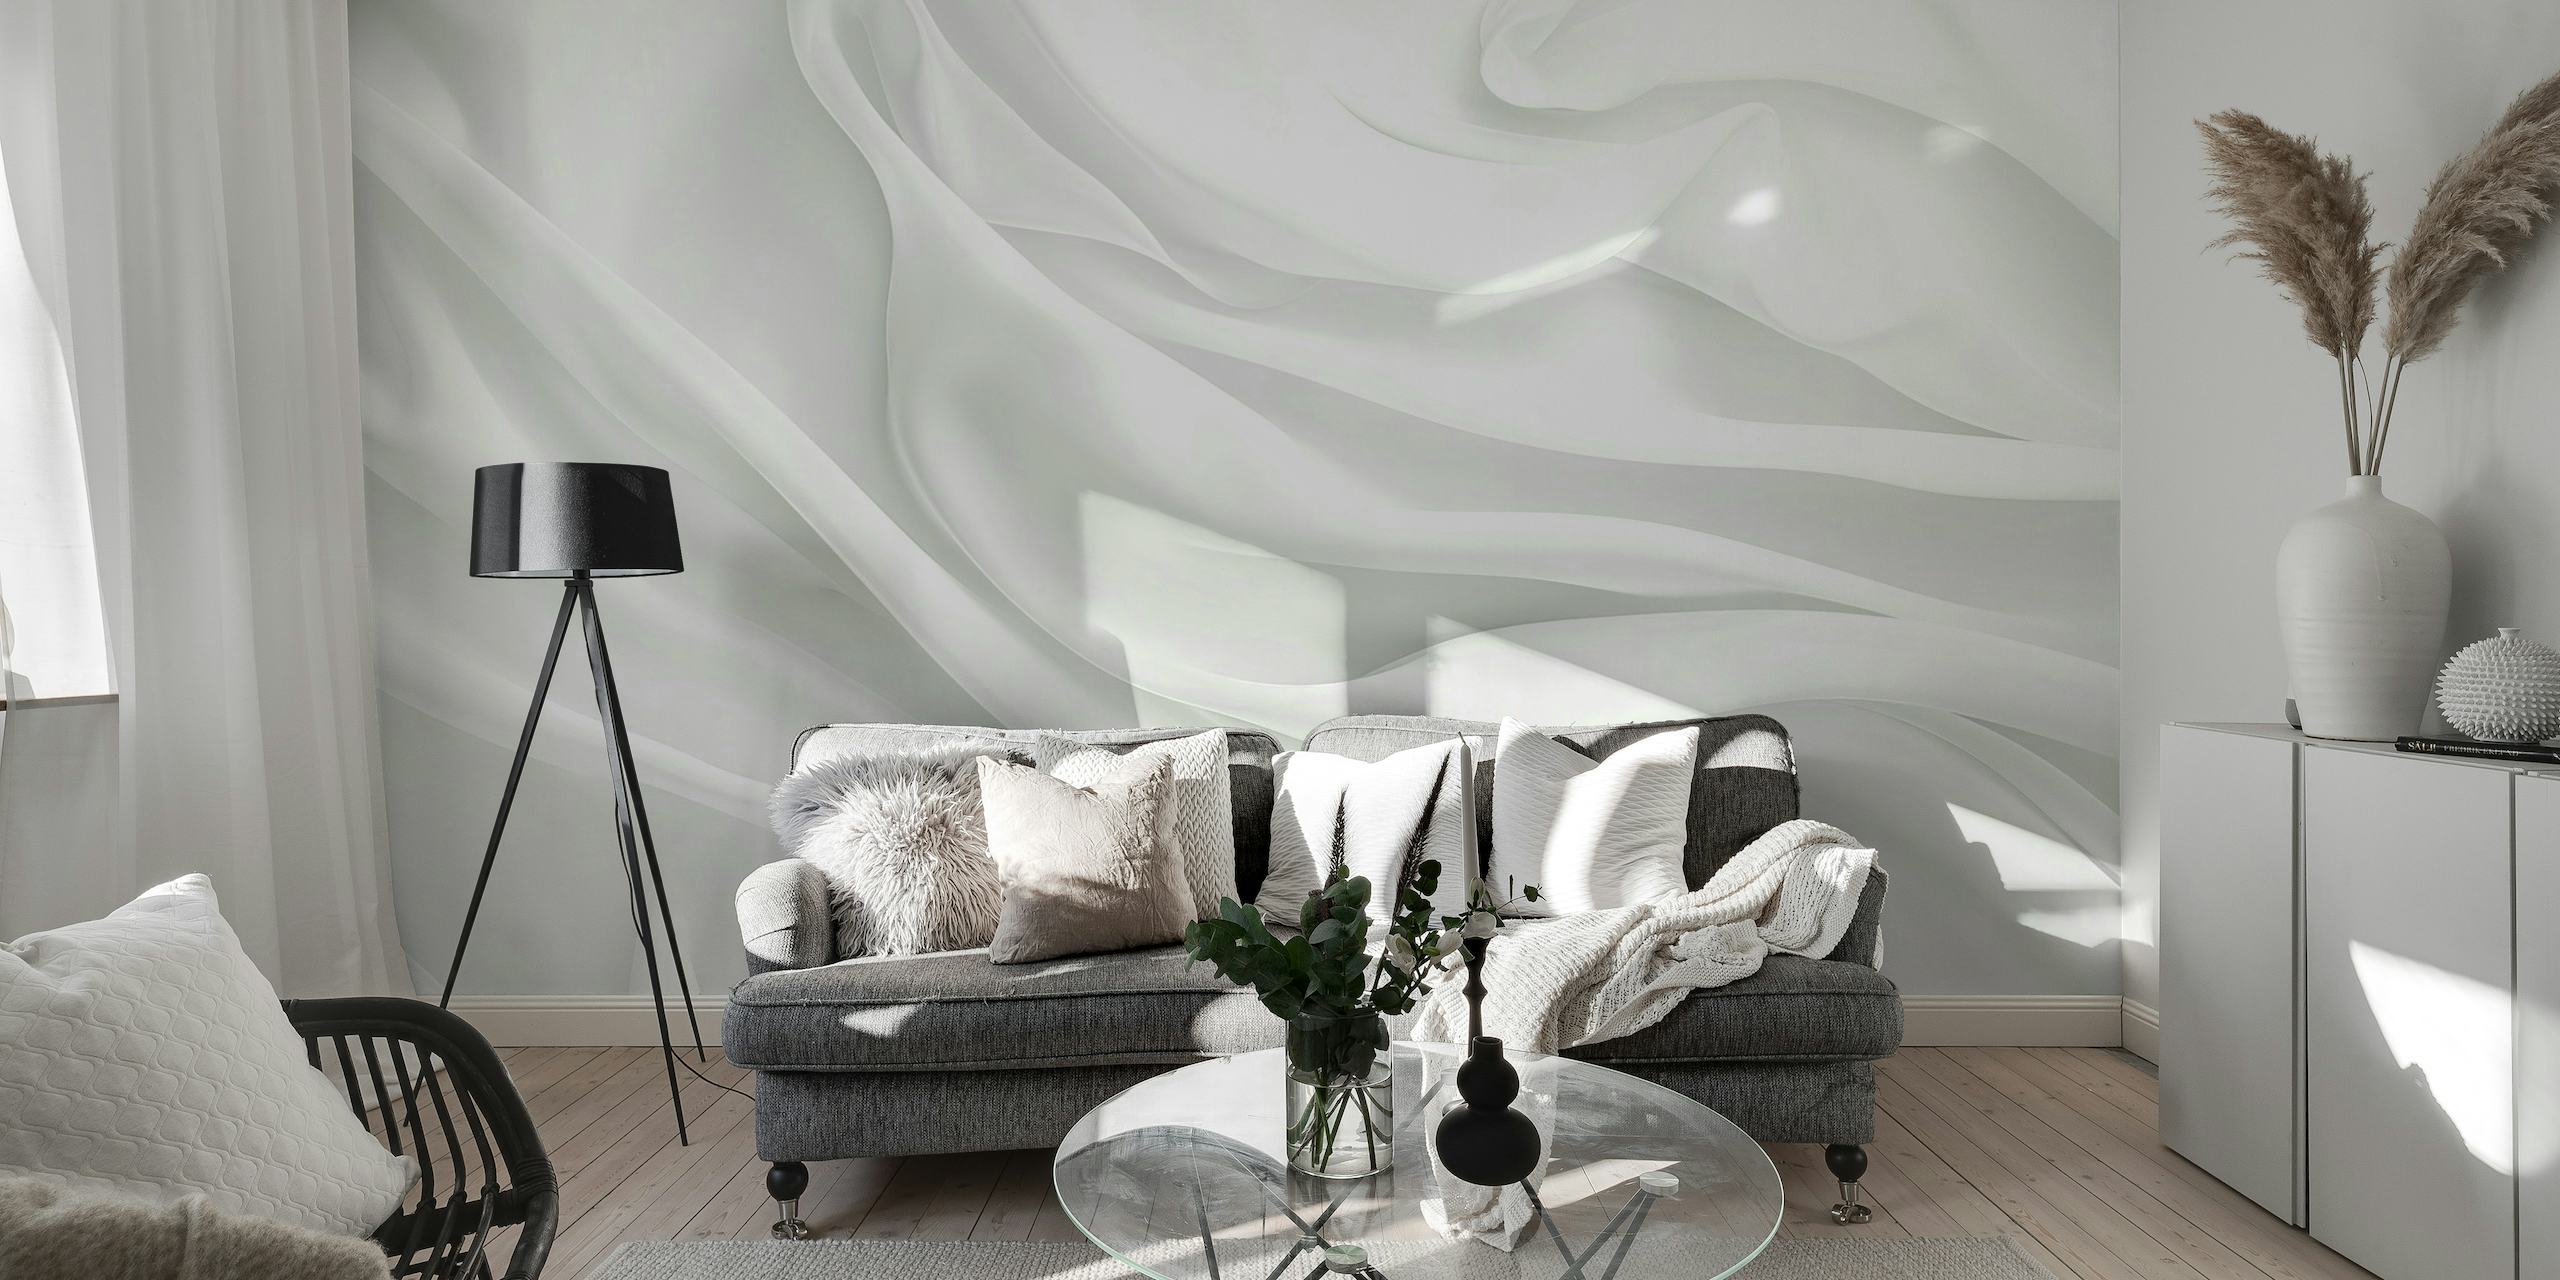 Elegantní fototapeta s bílou hedvábnou texturou pro moderní interiéry